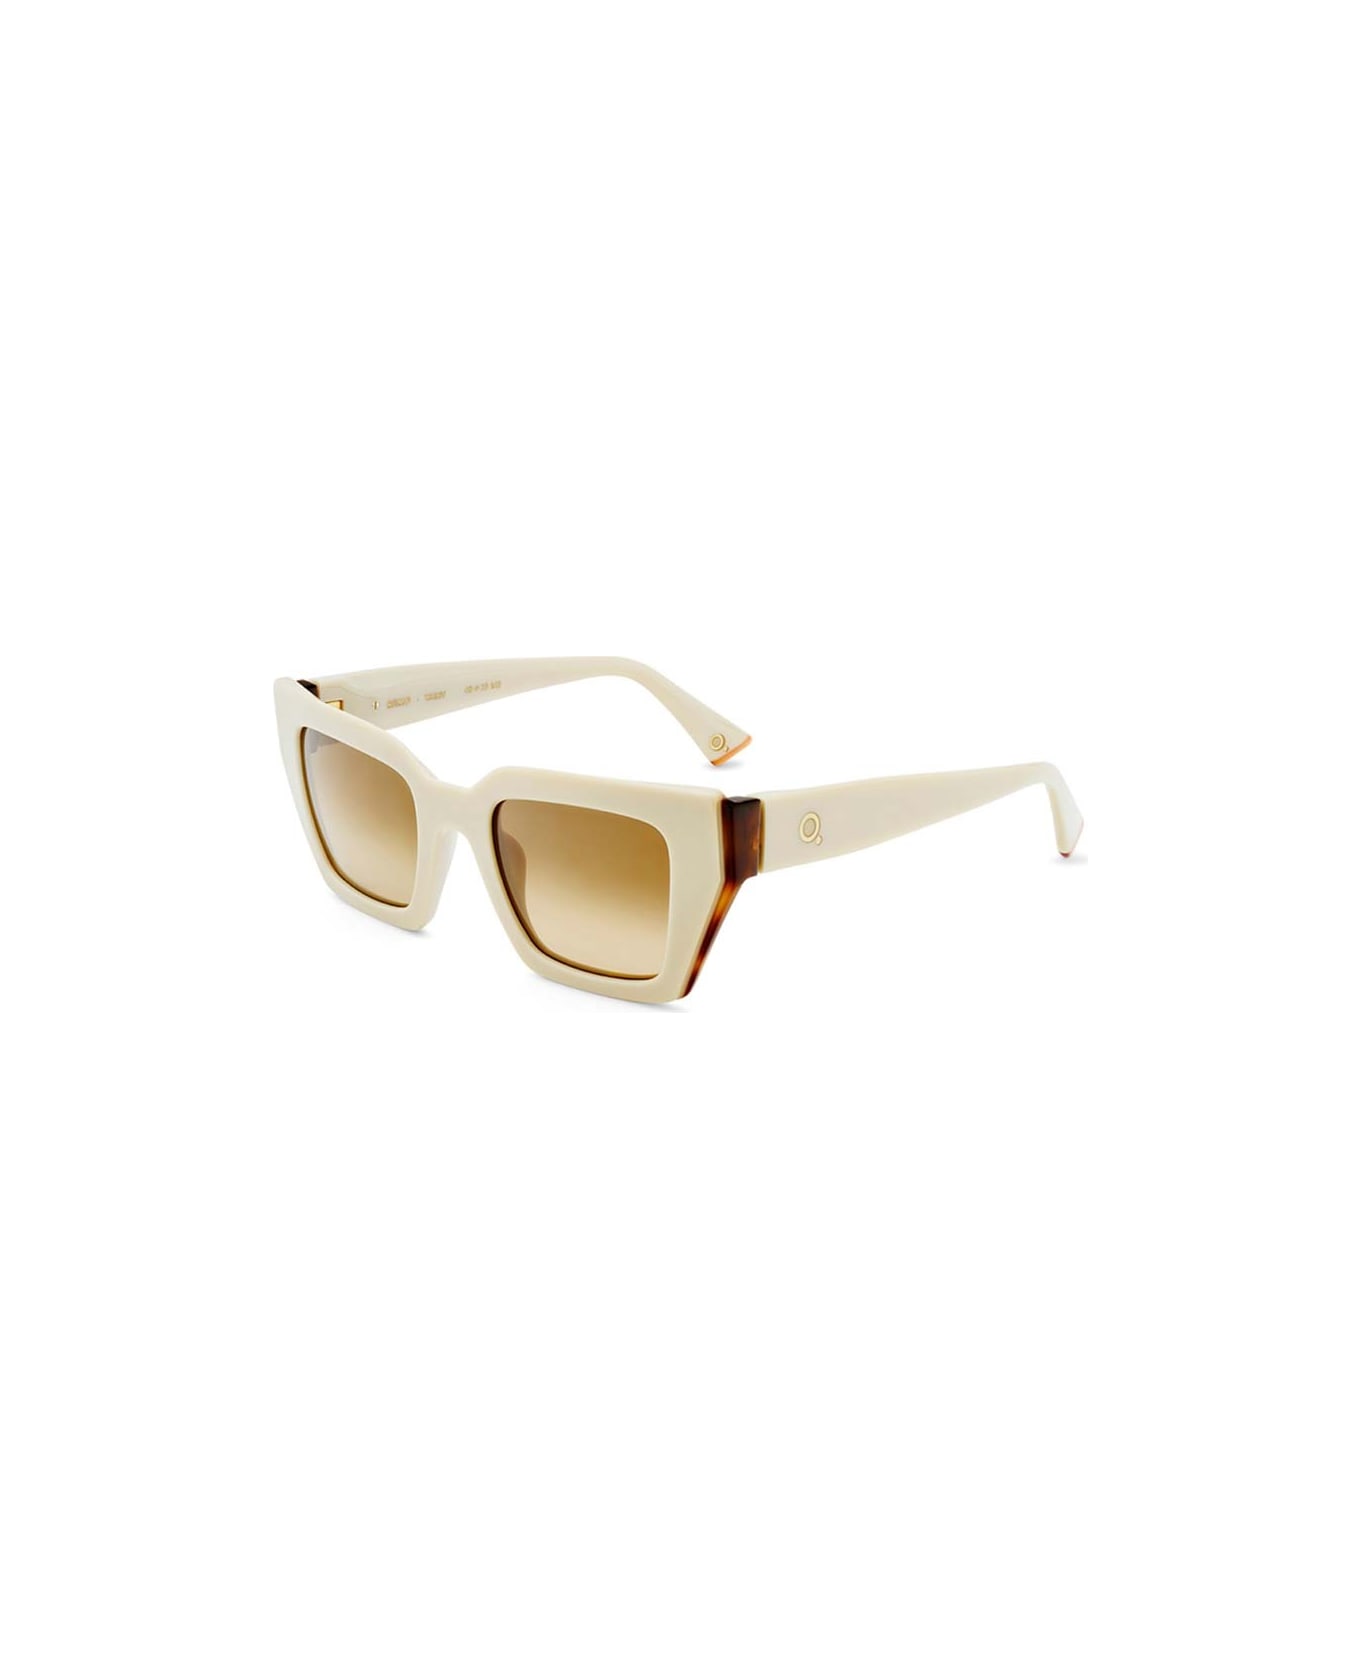 Etnia Barcelona Sunglasses - Avorio/Marrone sfumato